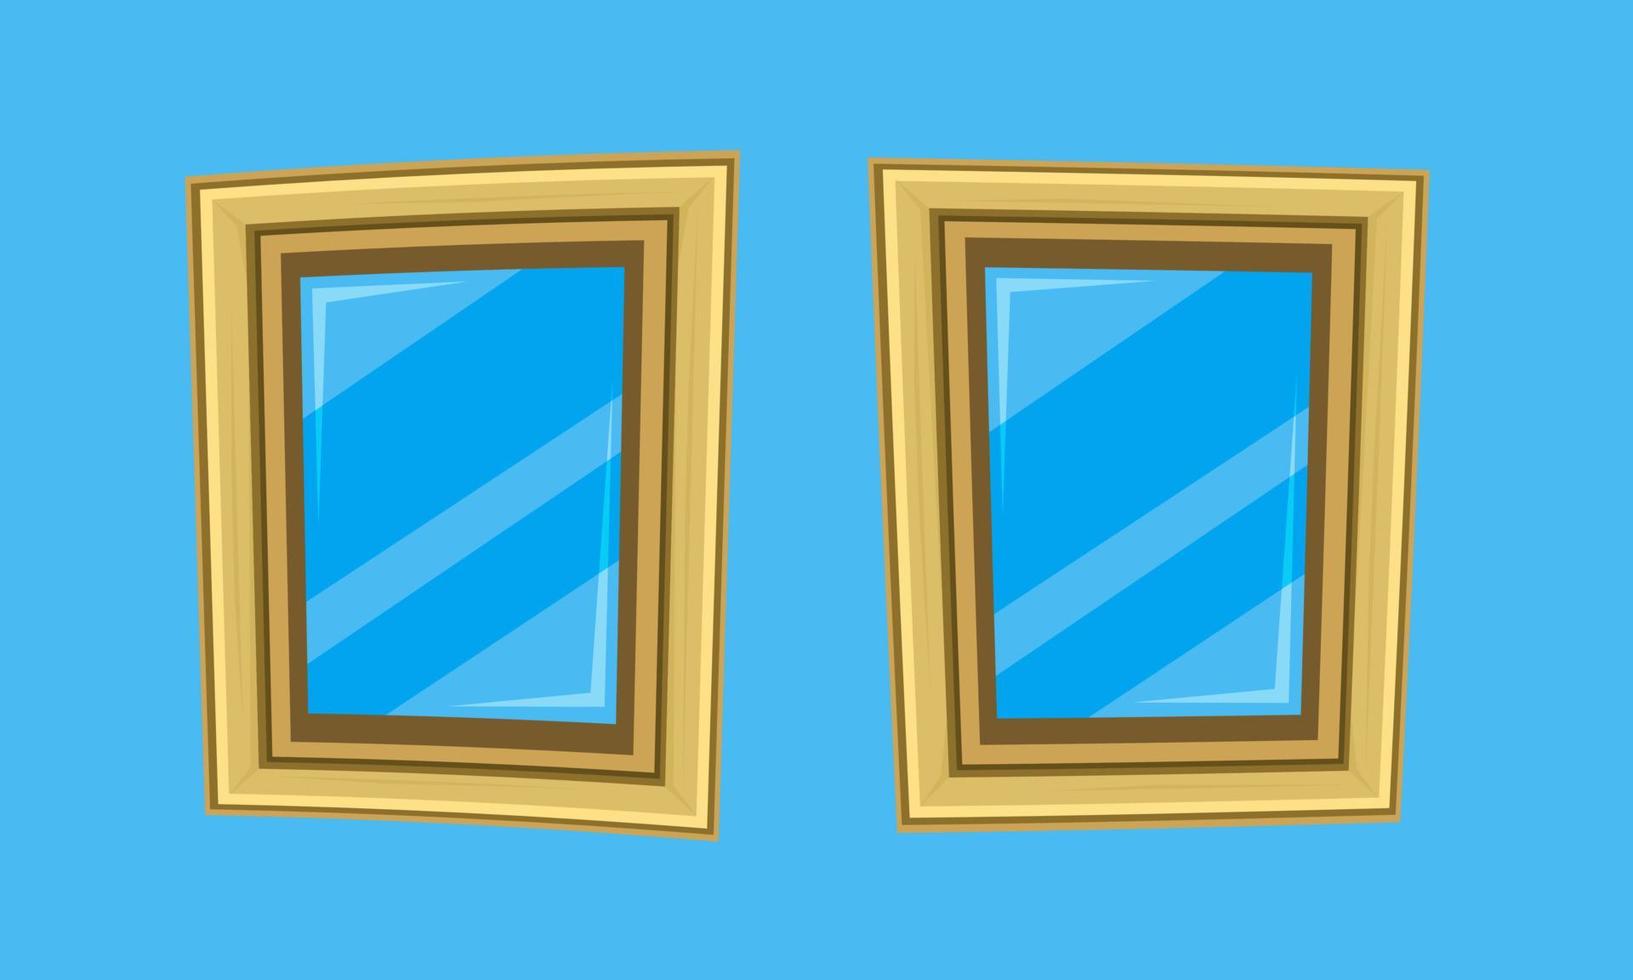 marcos de fotos estilizados caricaturescos espejos ventanas vector